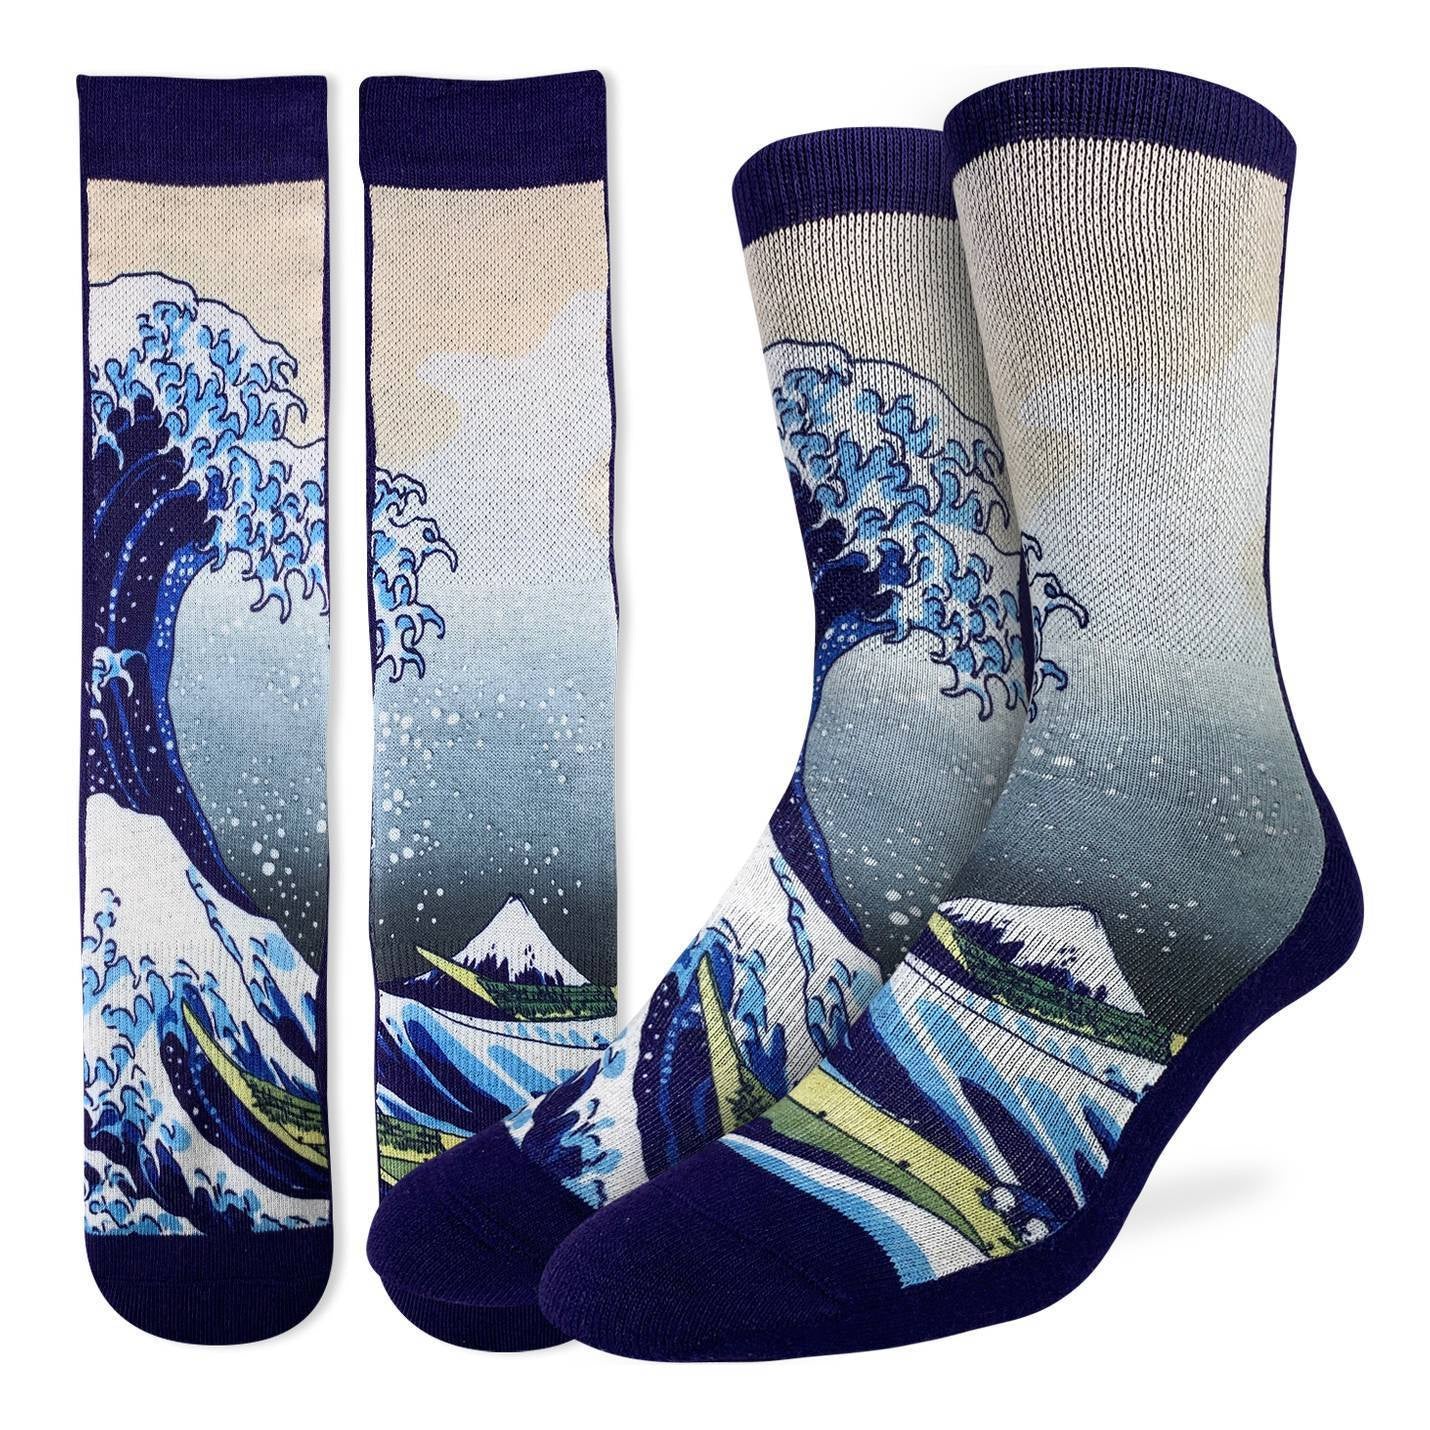 The Great Wave off Kanagawa Socks (Size 8-13)